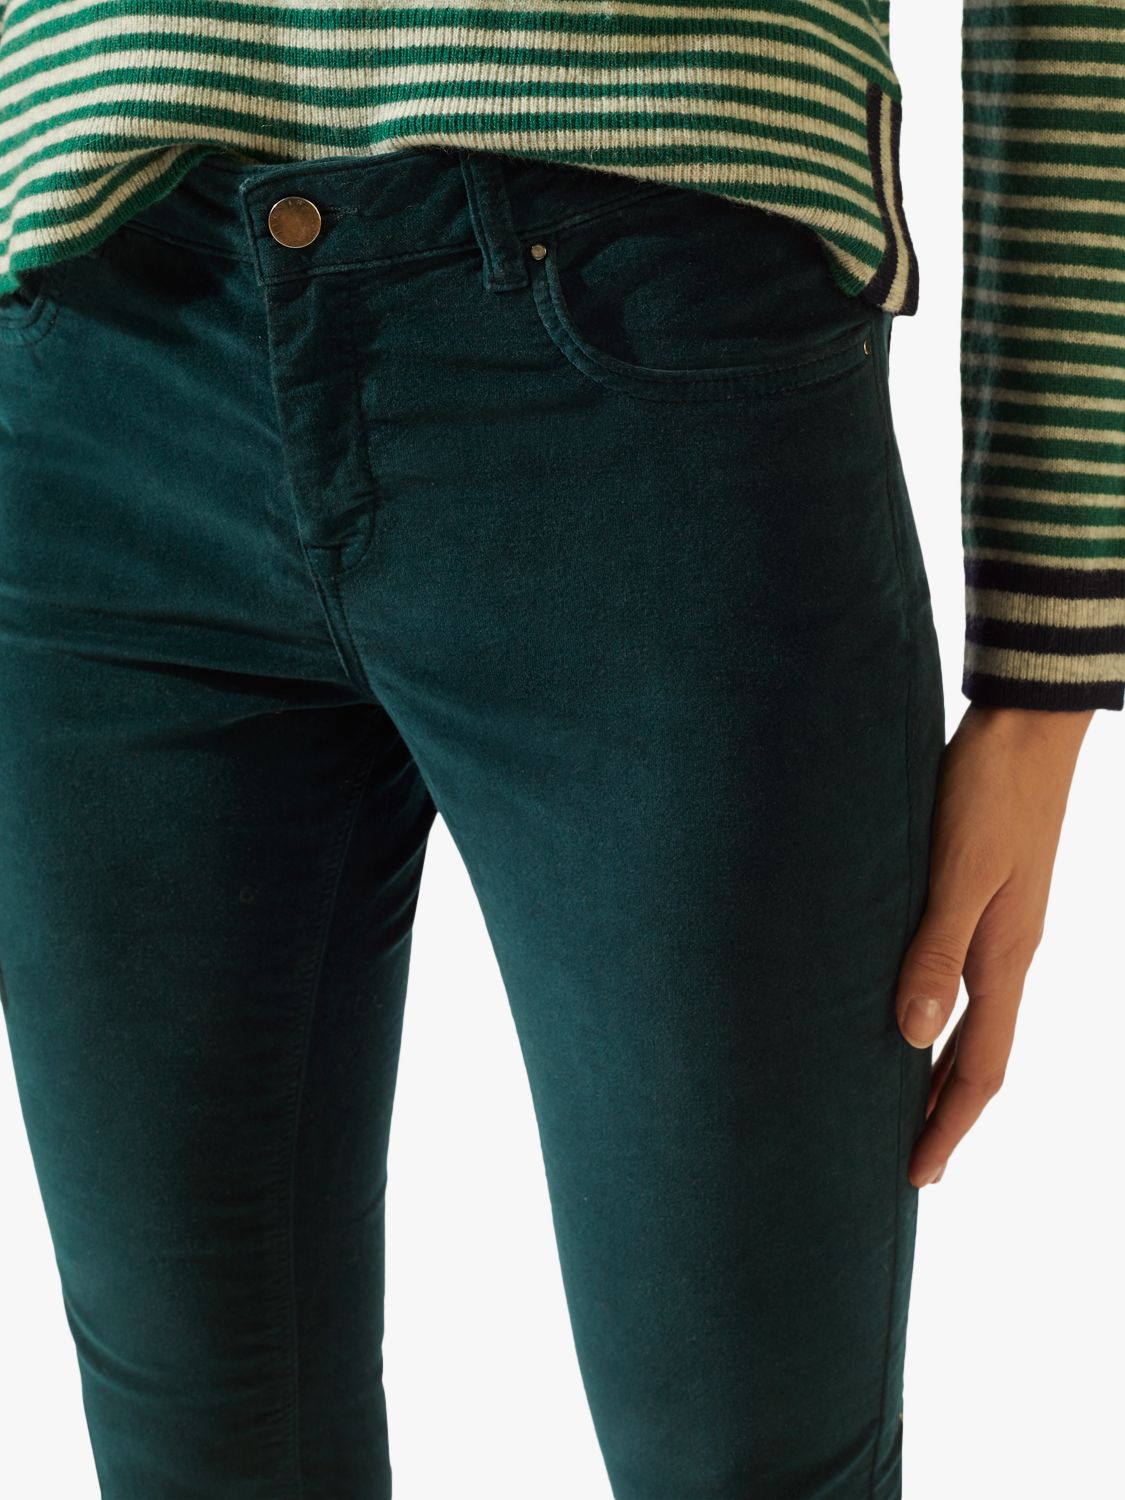 green velvet skinny jeans